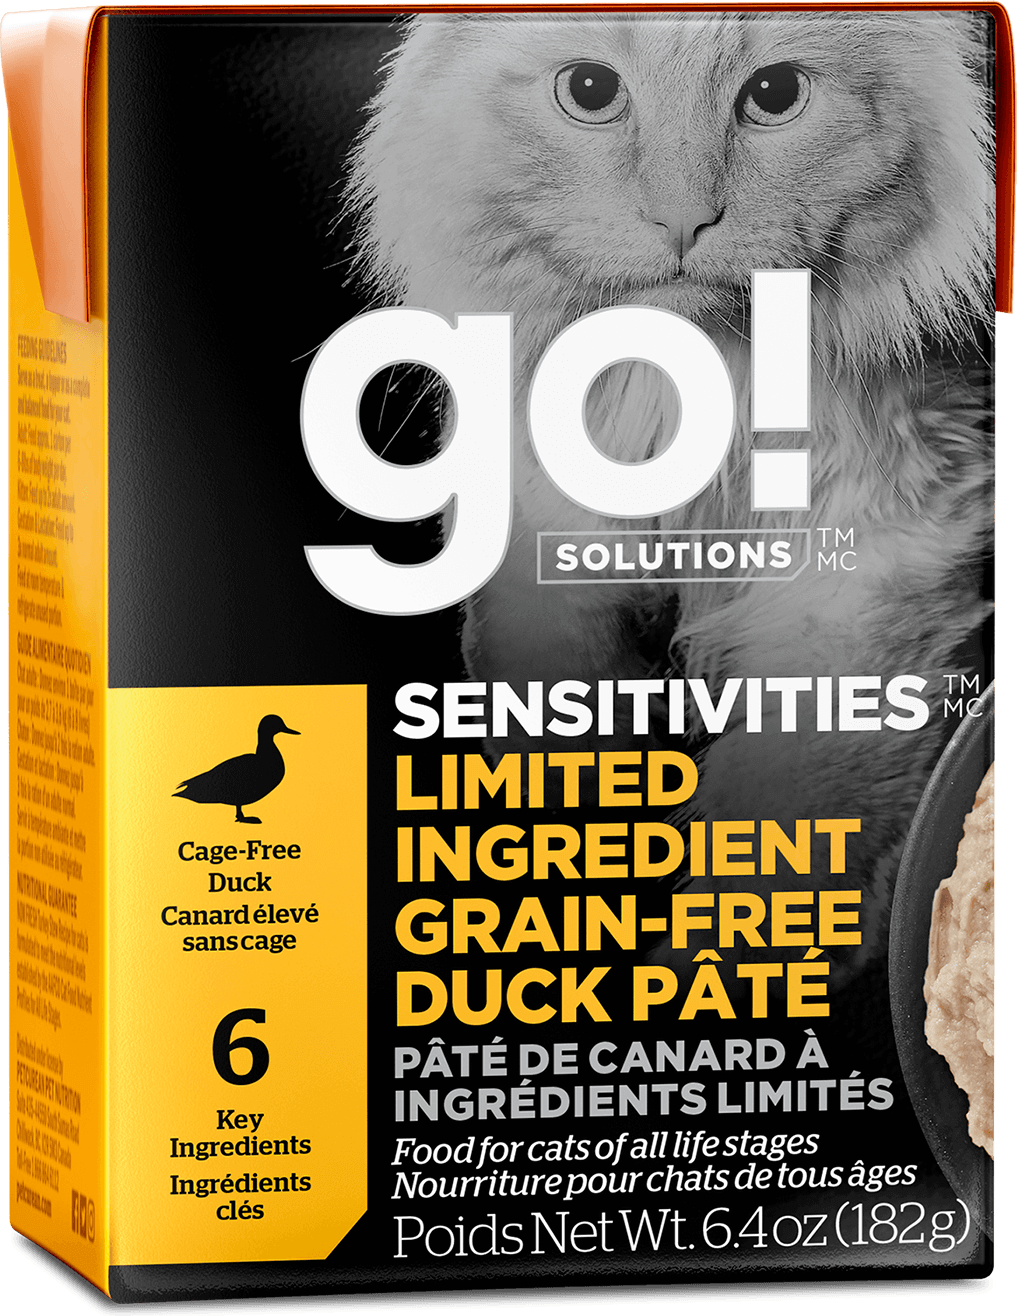 GO! Solutions Sensitivities Limited Ingredient Grain-Free Duck Pâté